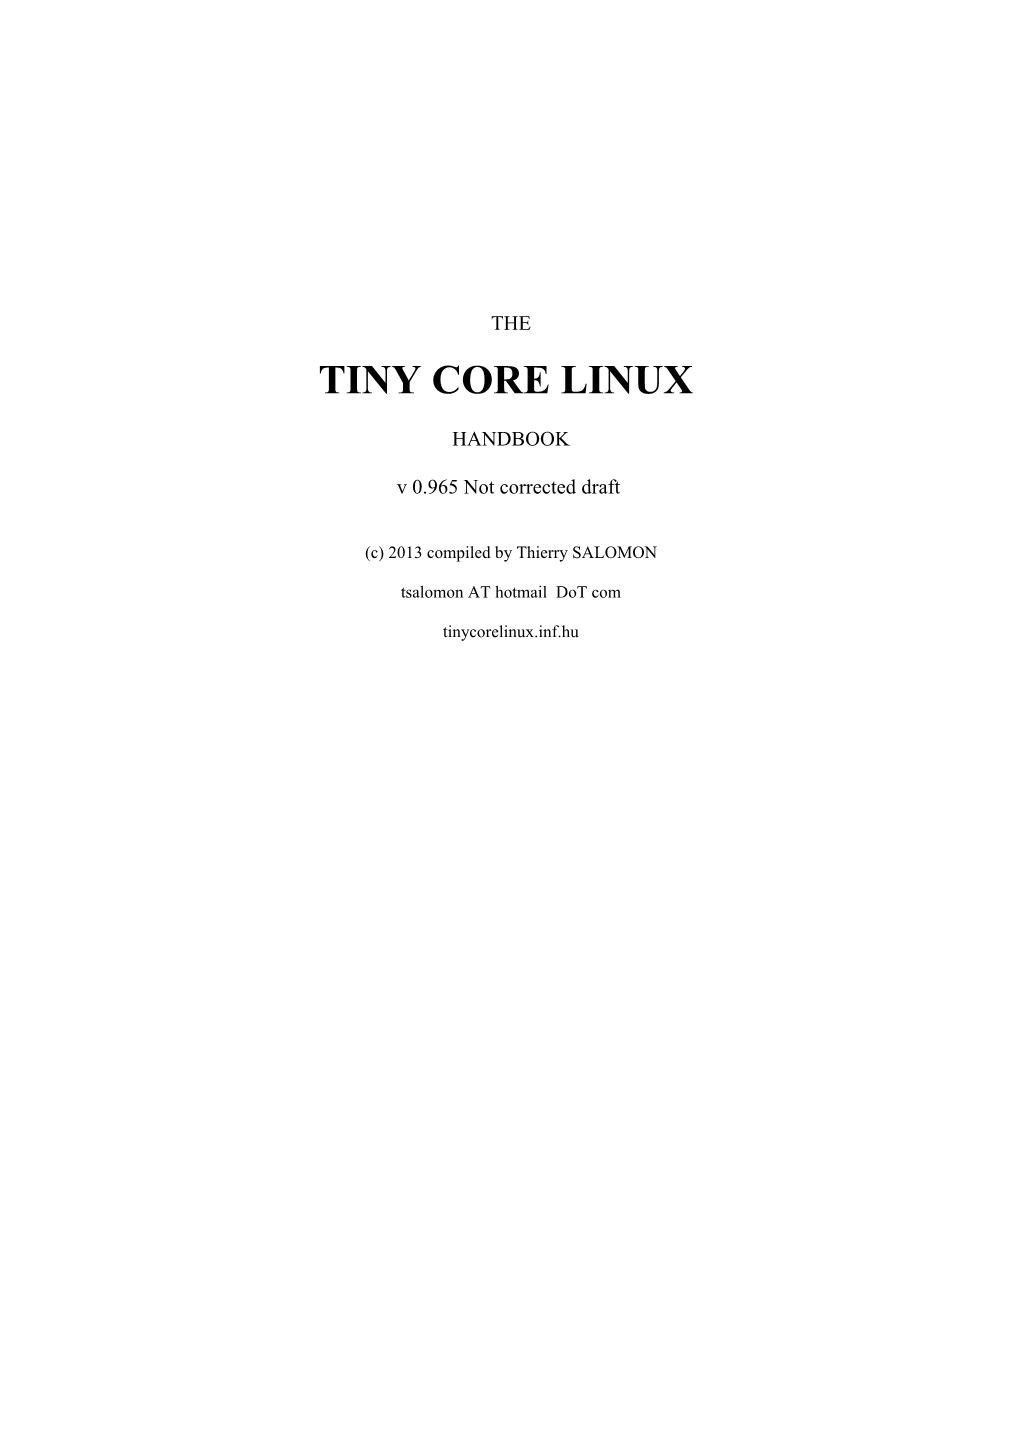 Tiny Core Linux